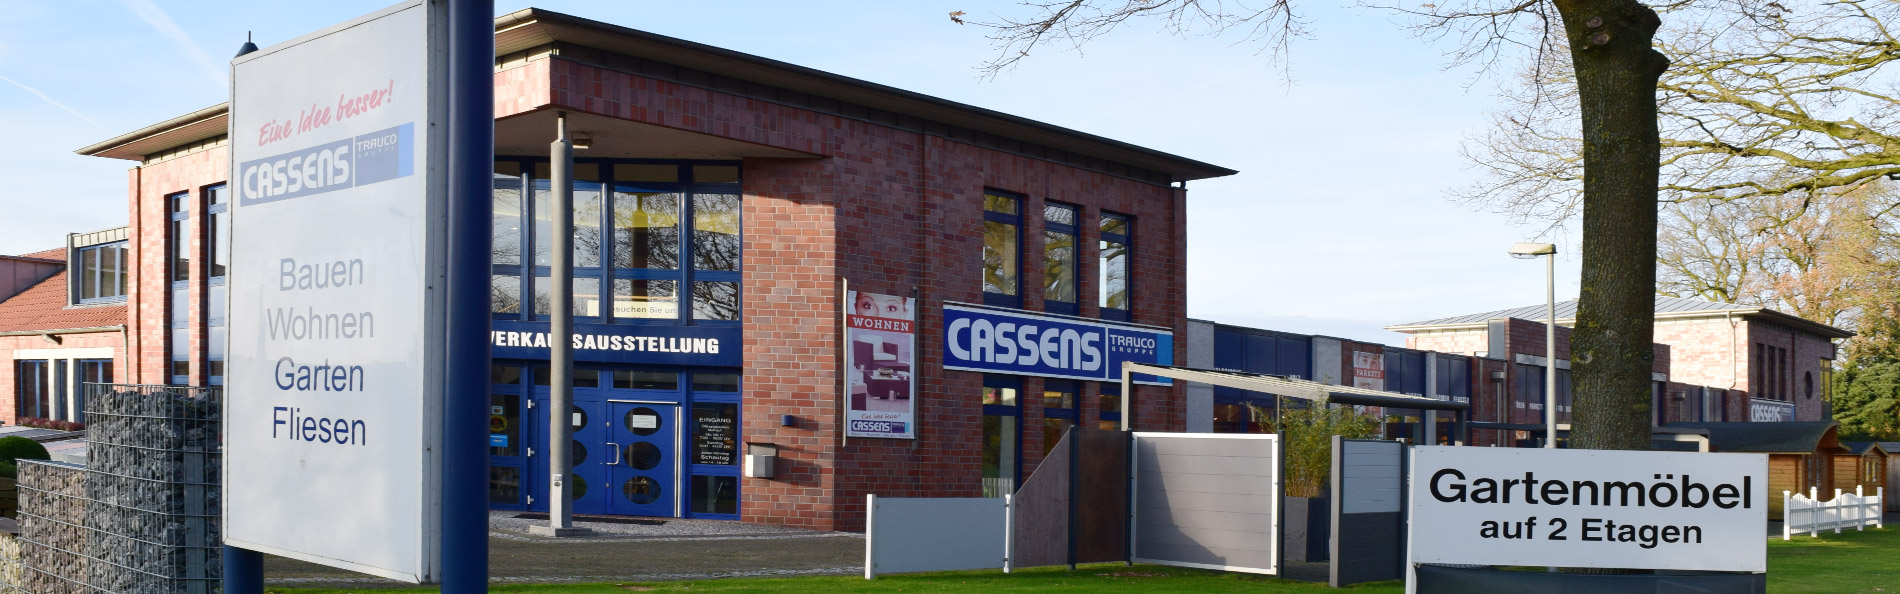 Die Fassade von unserem Standort in Oldenburg - Cassens